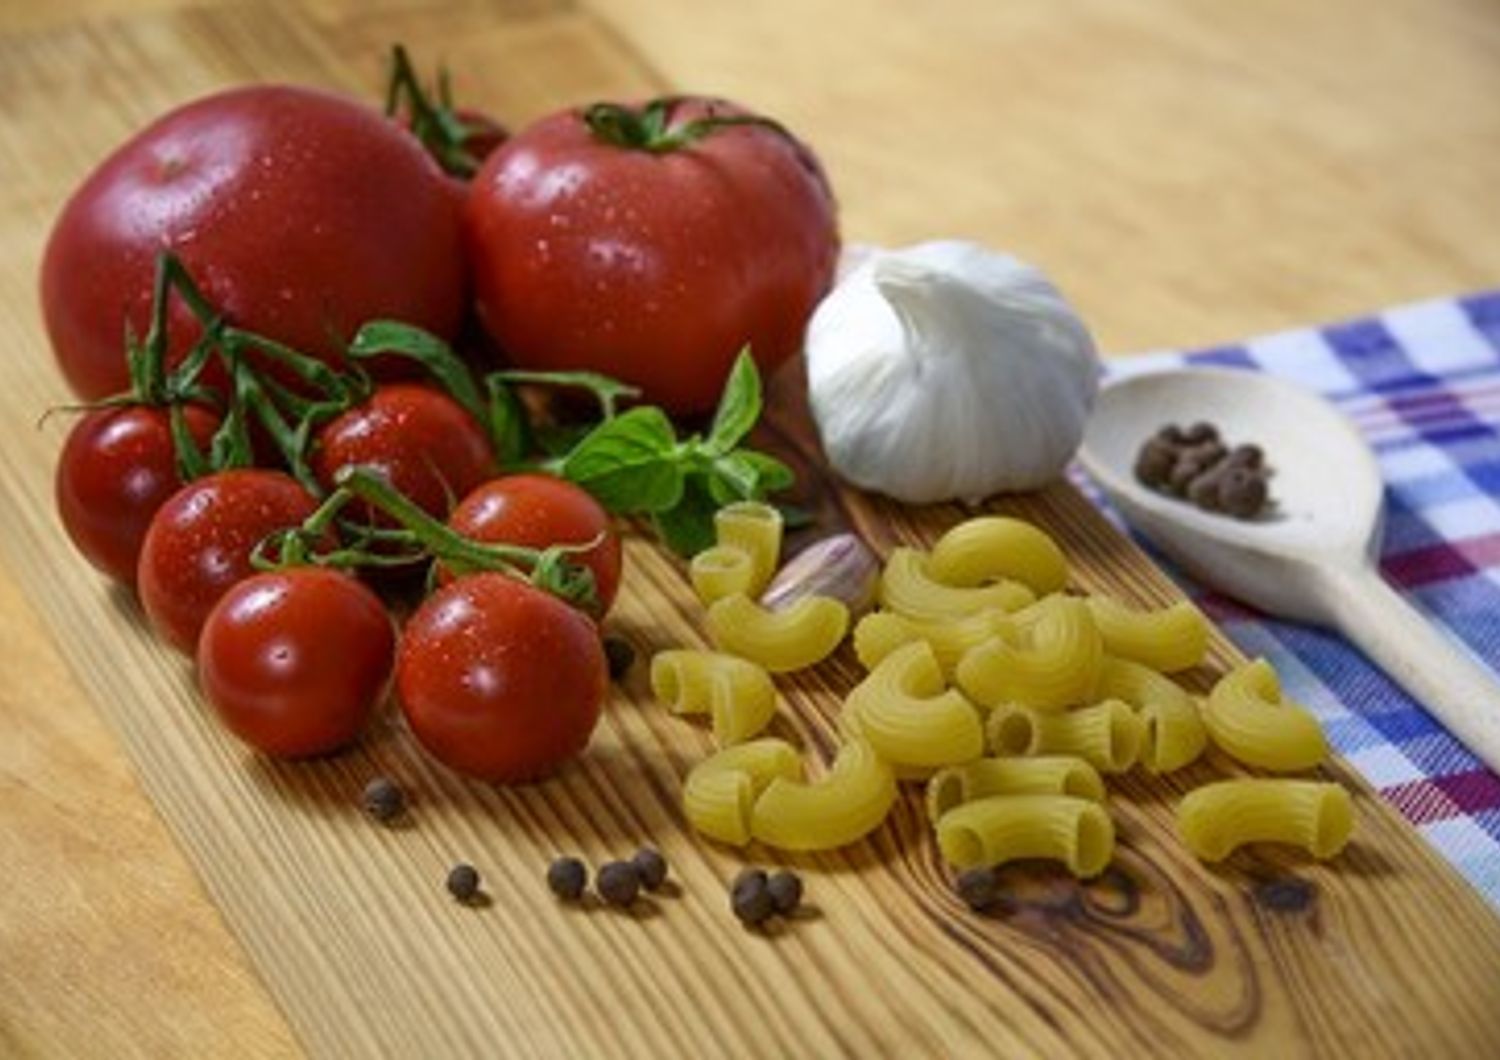 Cucina mediterranea prodotti cibo italiano (pixabay)